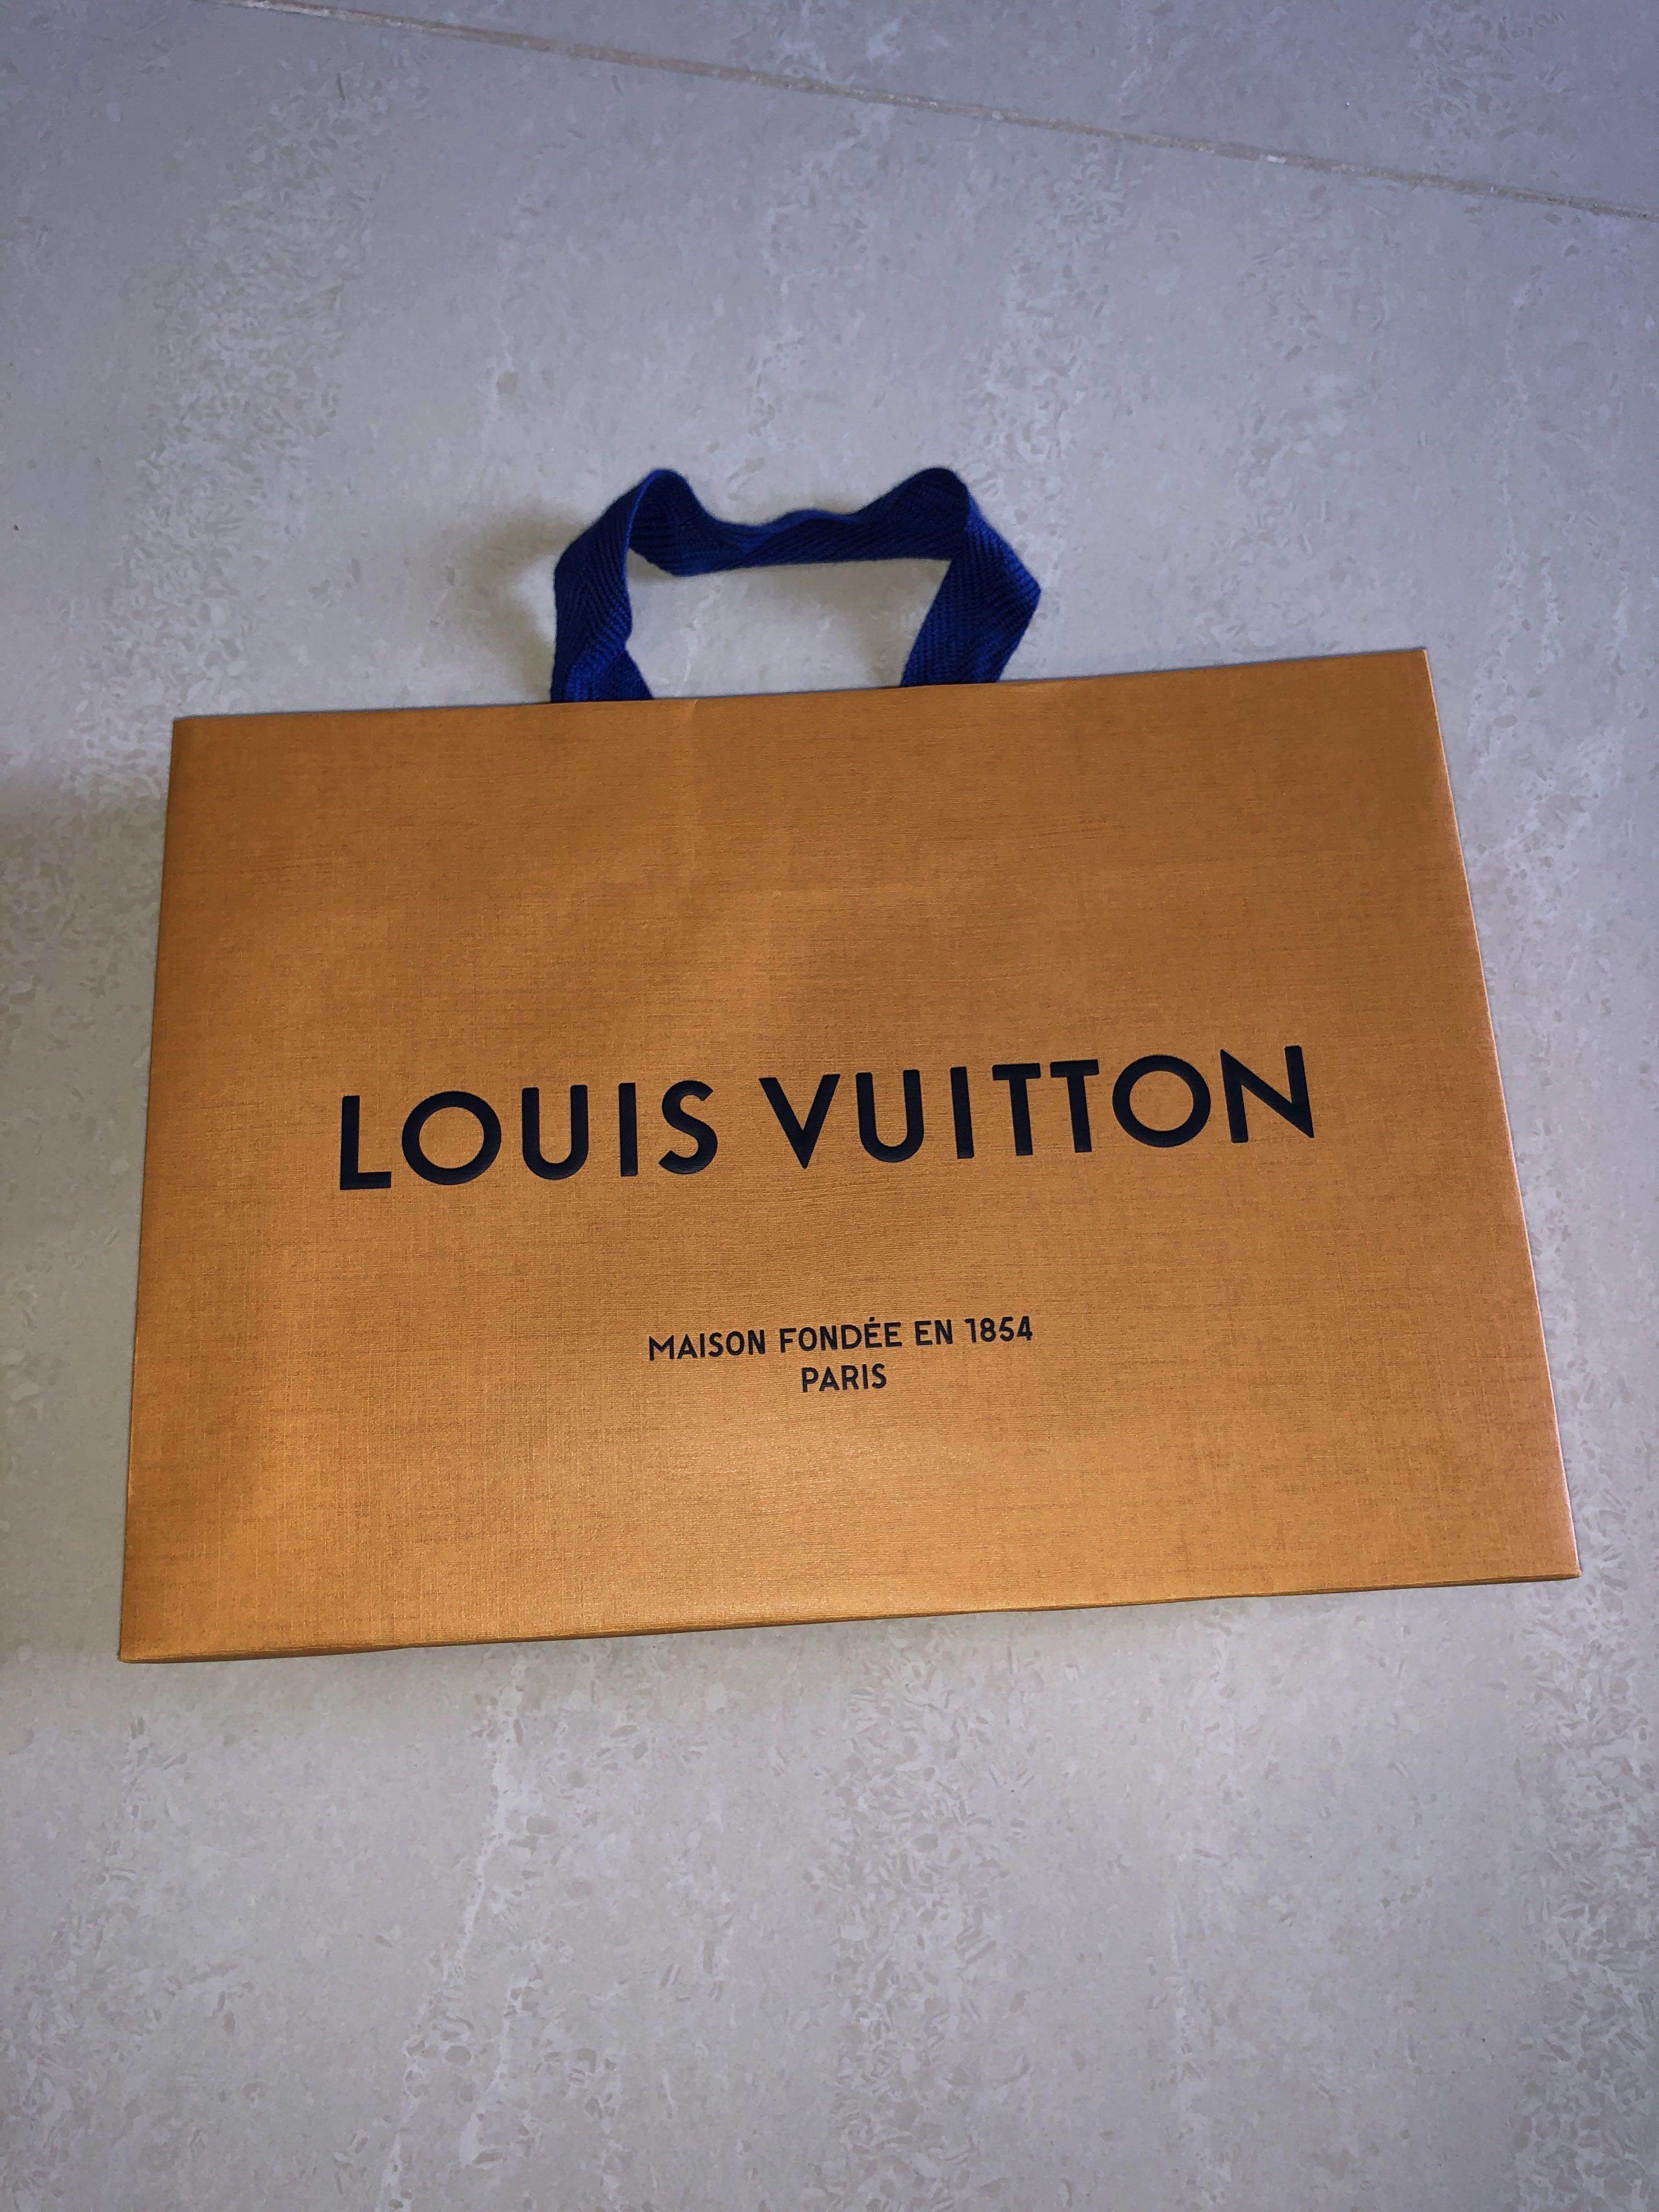 Louis Vuitton Articles De Voyage Maison Fondee En 1854 Priceline